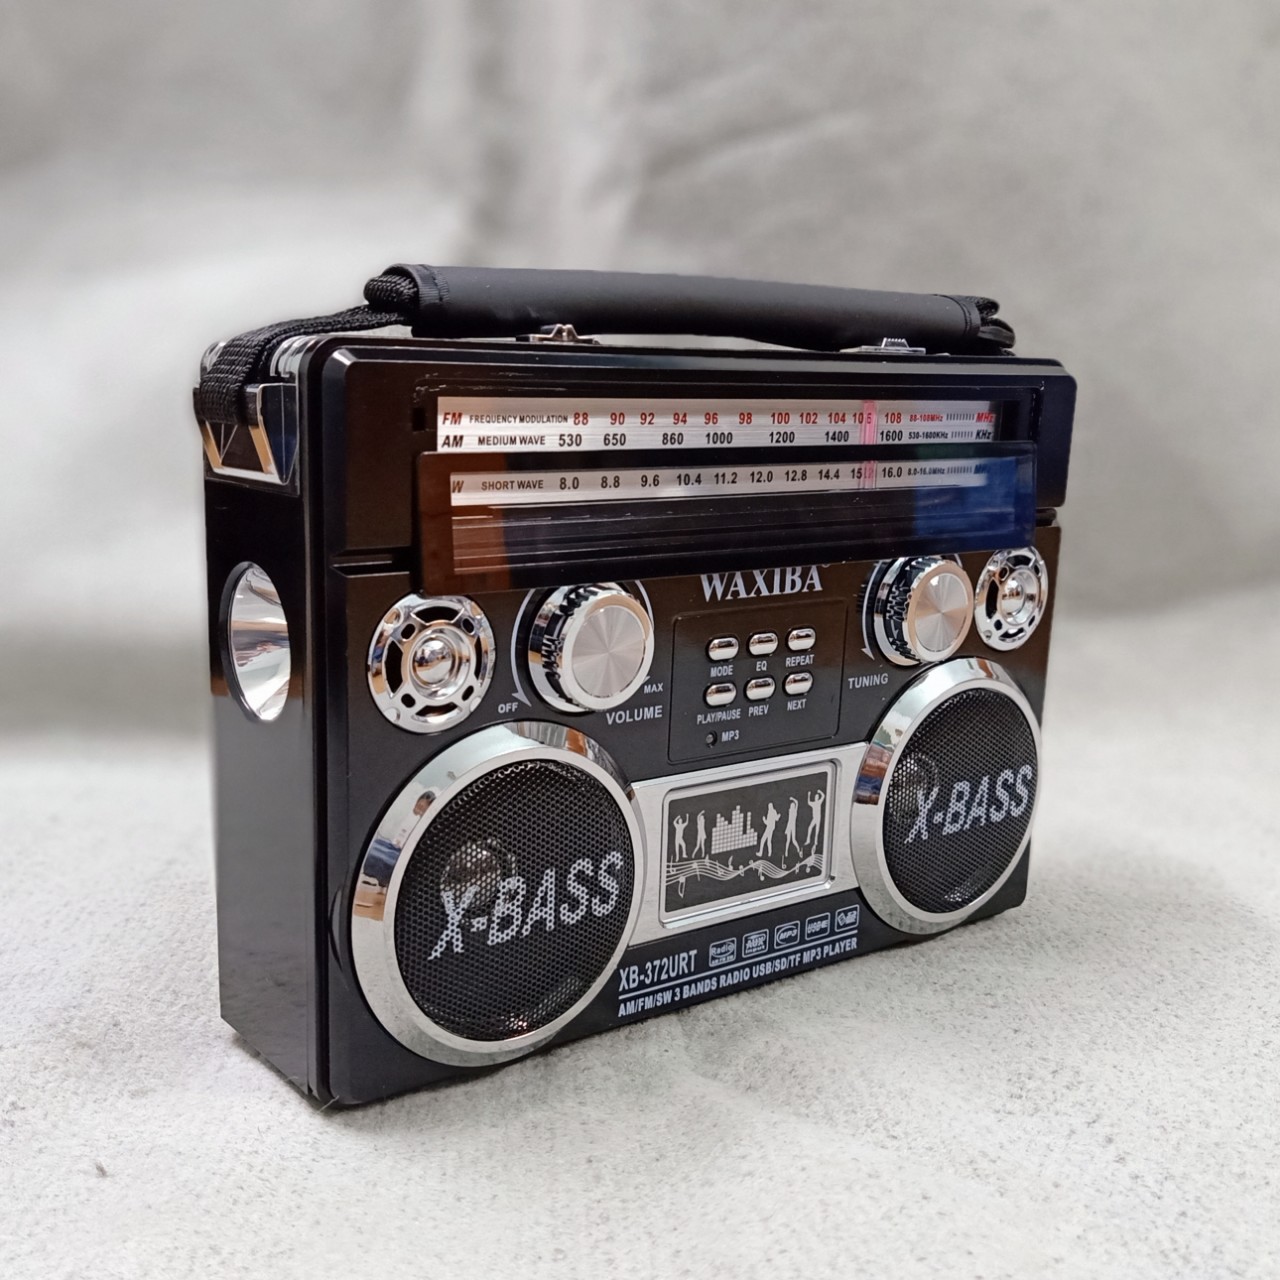 ĐÀI RADIO WAXIBA 371URT BẮT SÓNG FM/AM/SW – NGHE NHẠC TỪ USB THẺ NHỚ  Đậm Phong Cách Hàng Chính Hãng